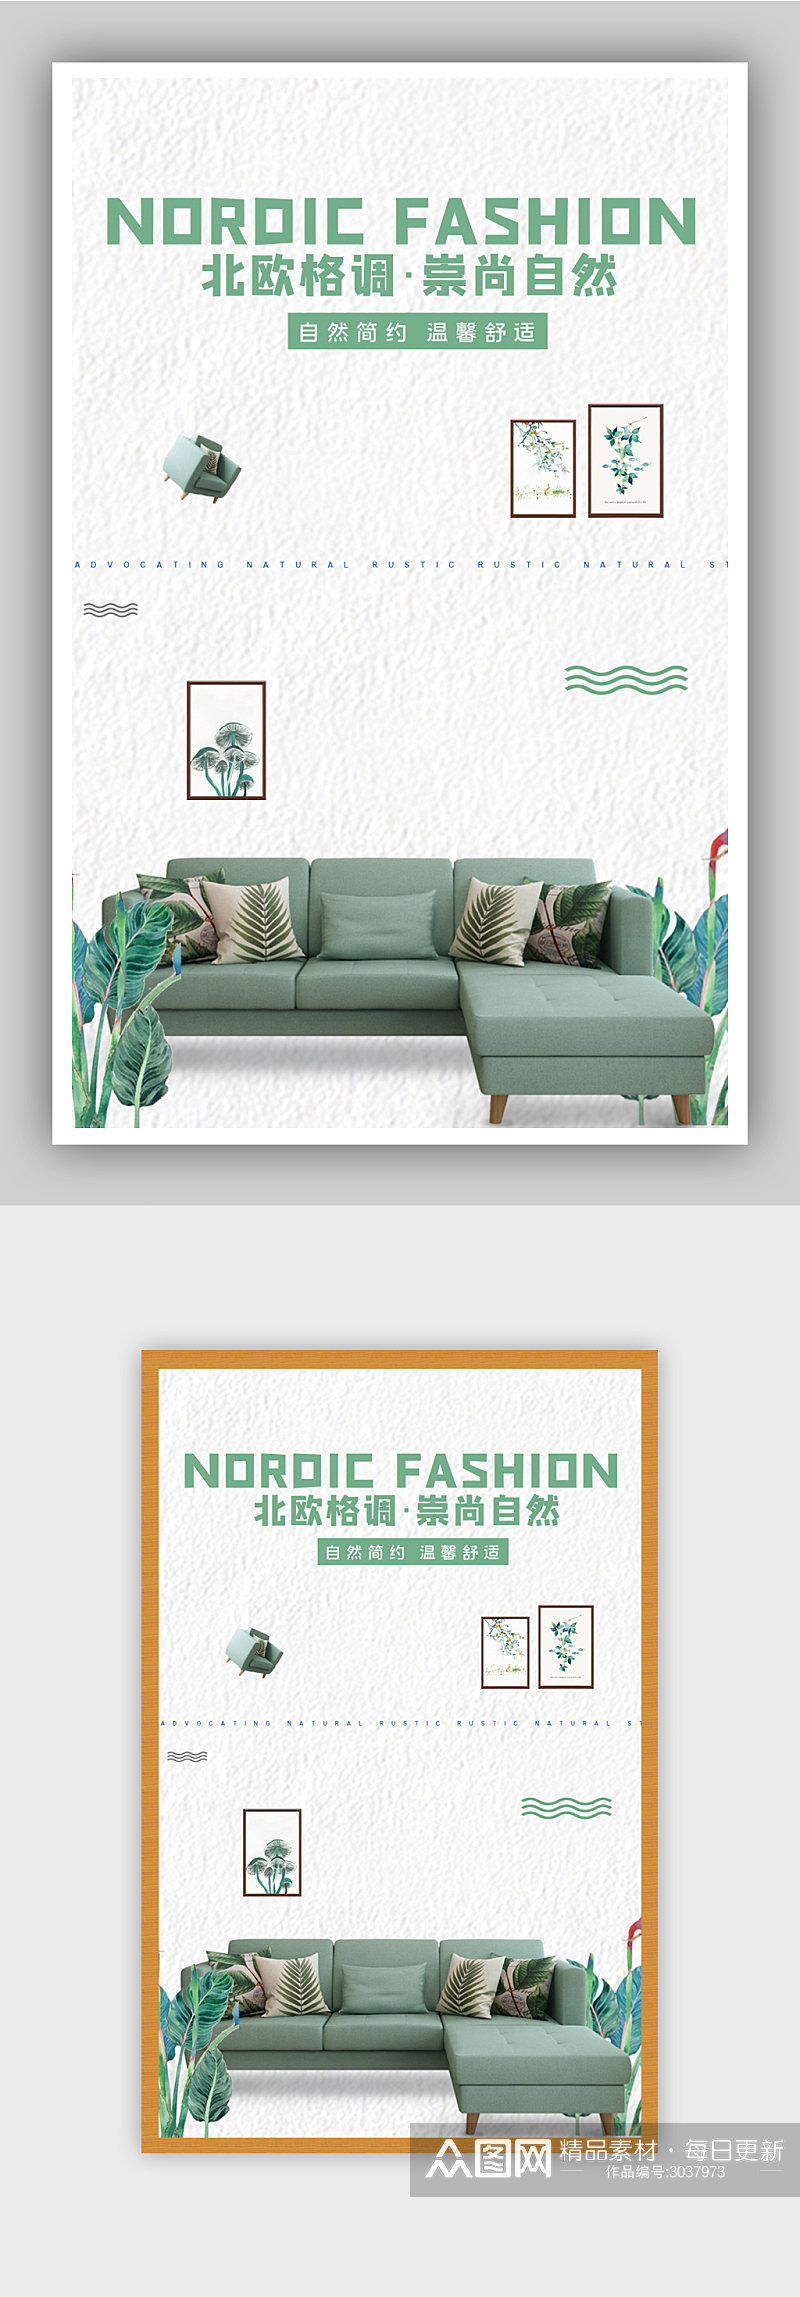 北欧格调家具沙发电商背景海报素材